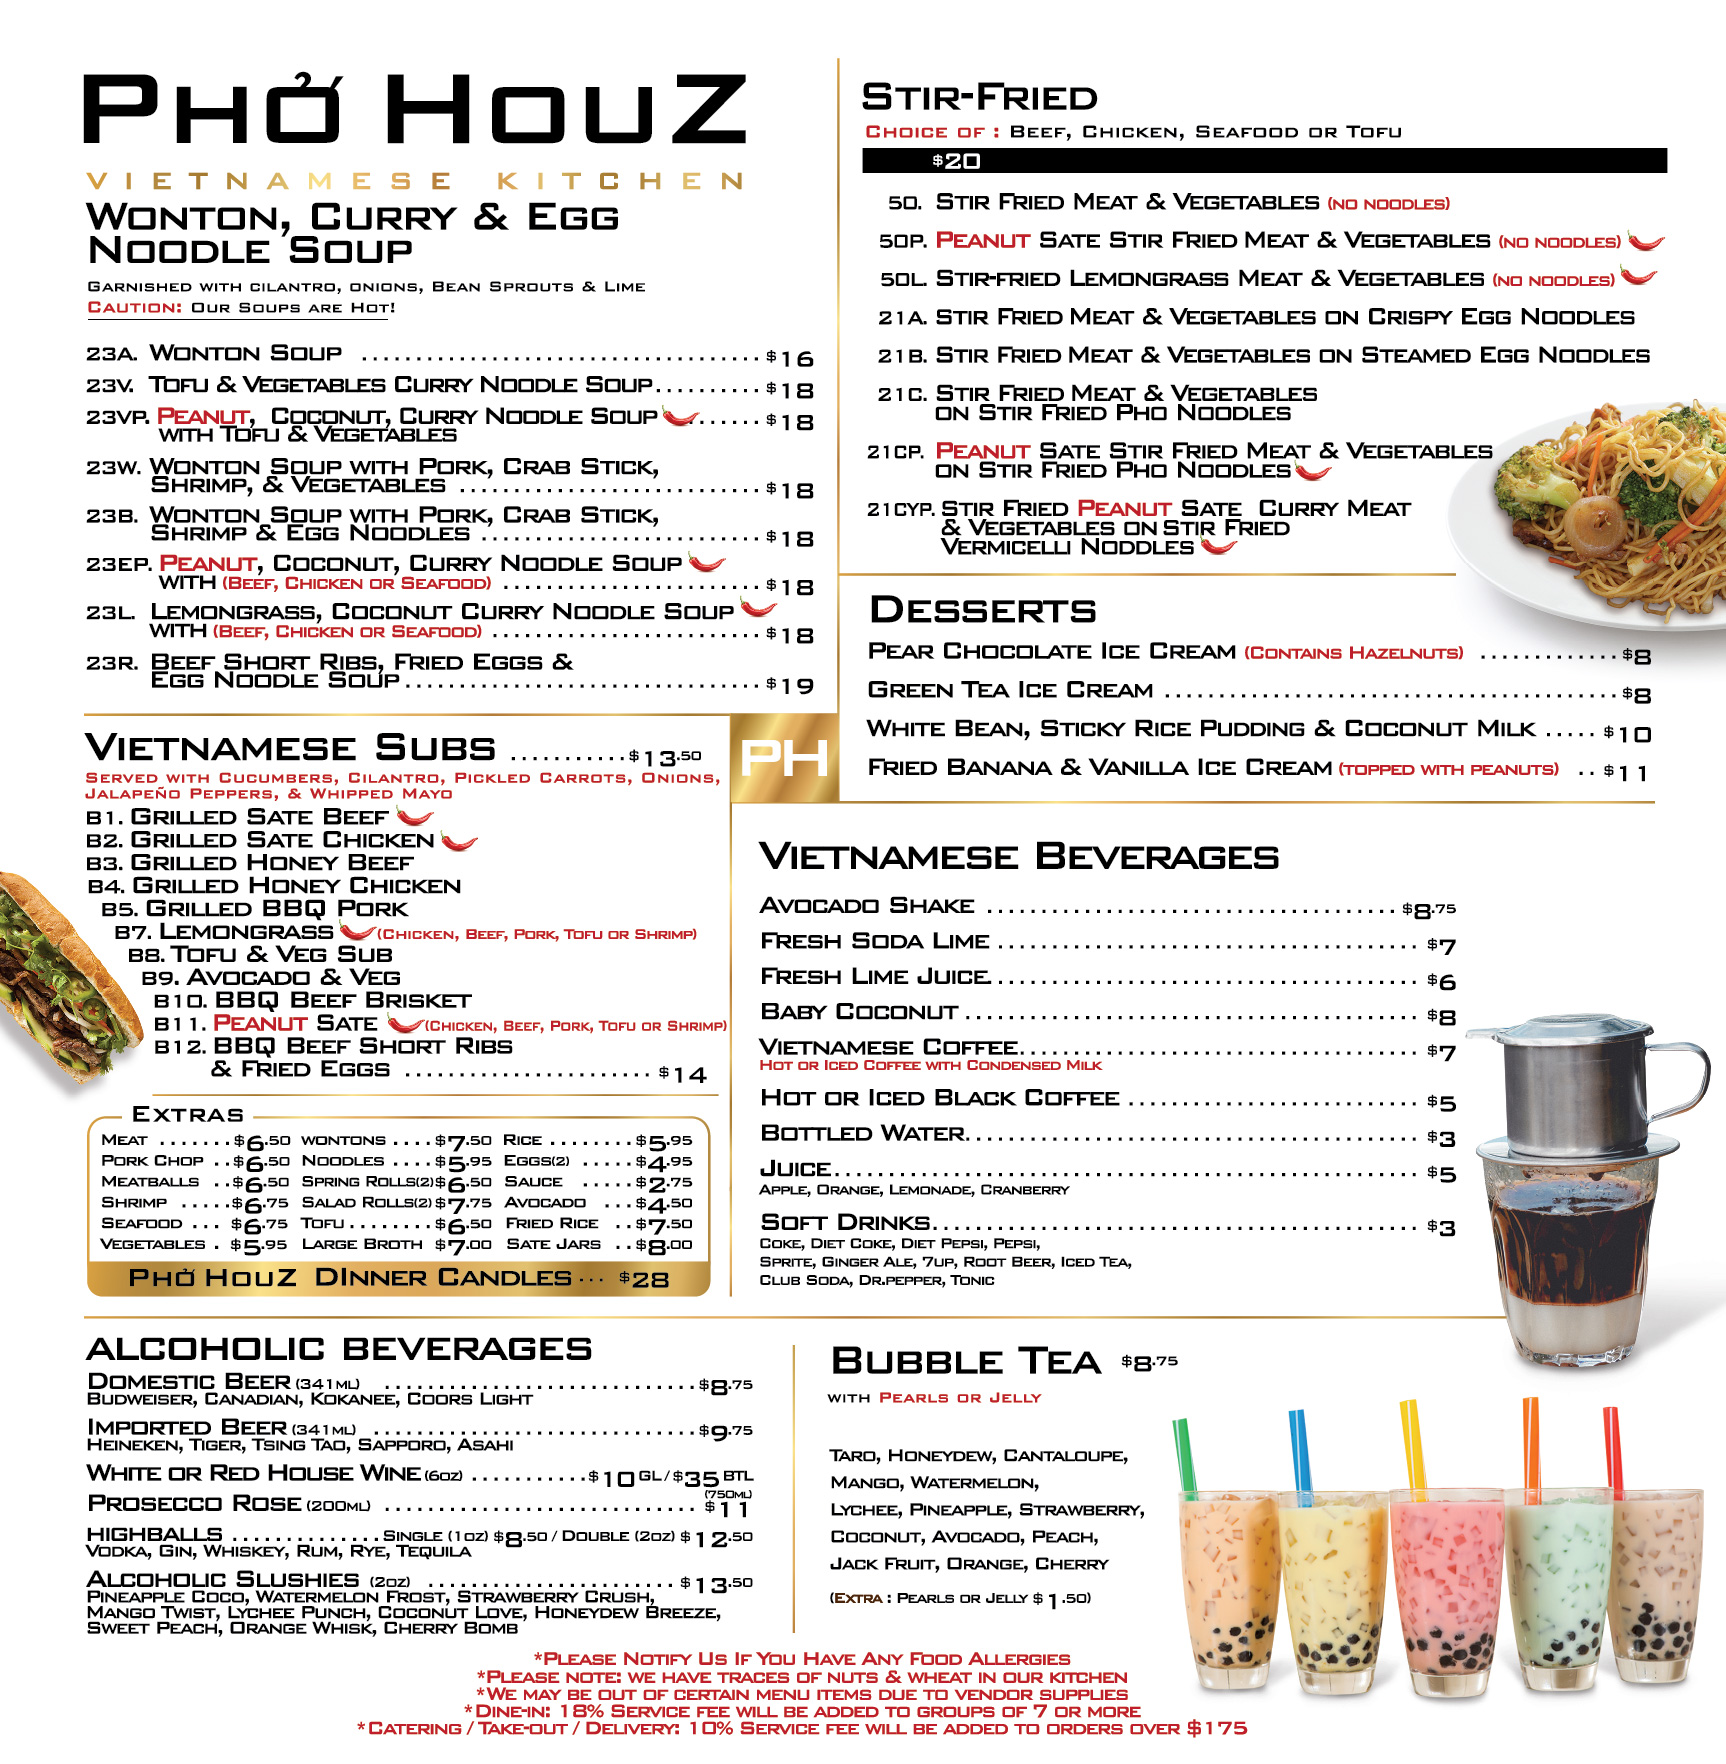 phohouz_menu2